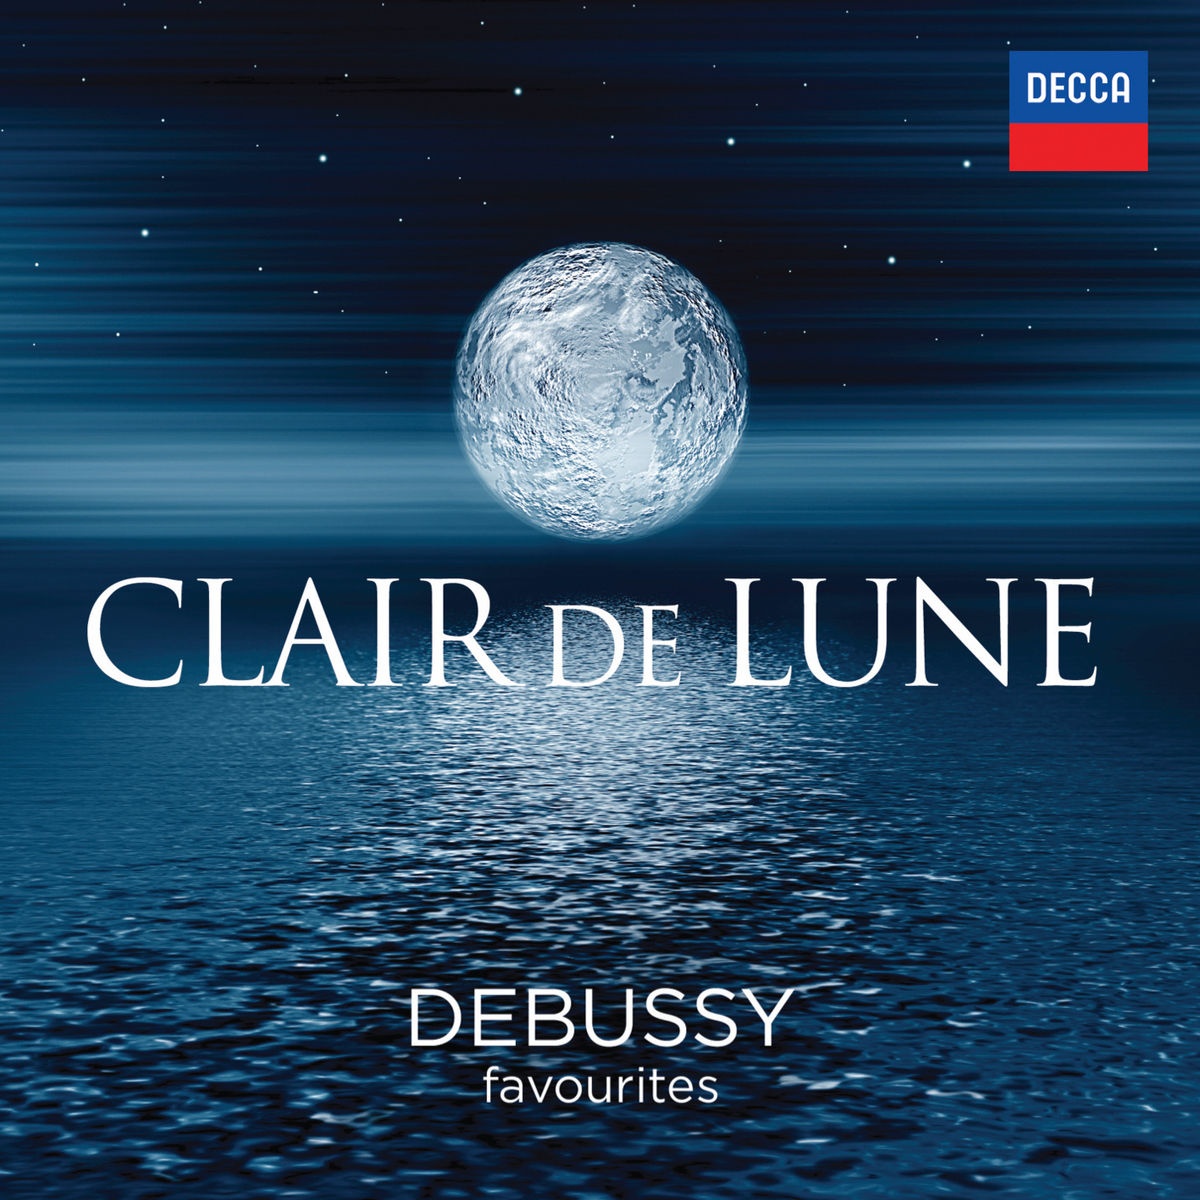 Debussy: La Mer, L. 109  1. From Dawn Till Noon On The Sea De l' aube a midi sur la mer